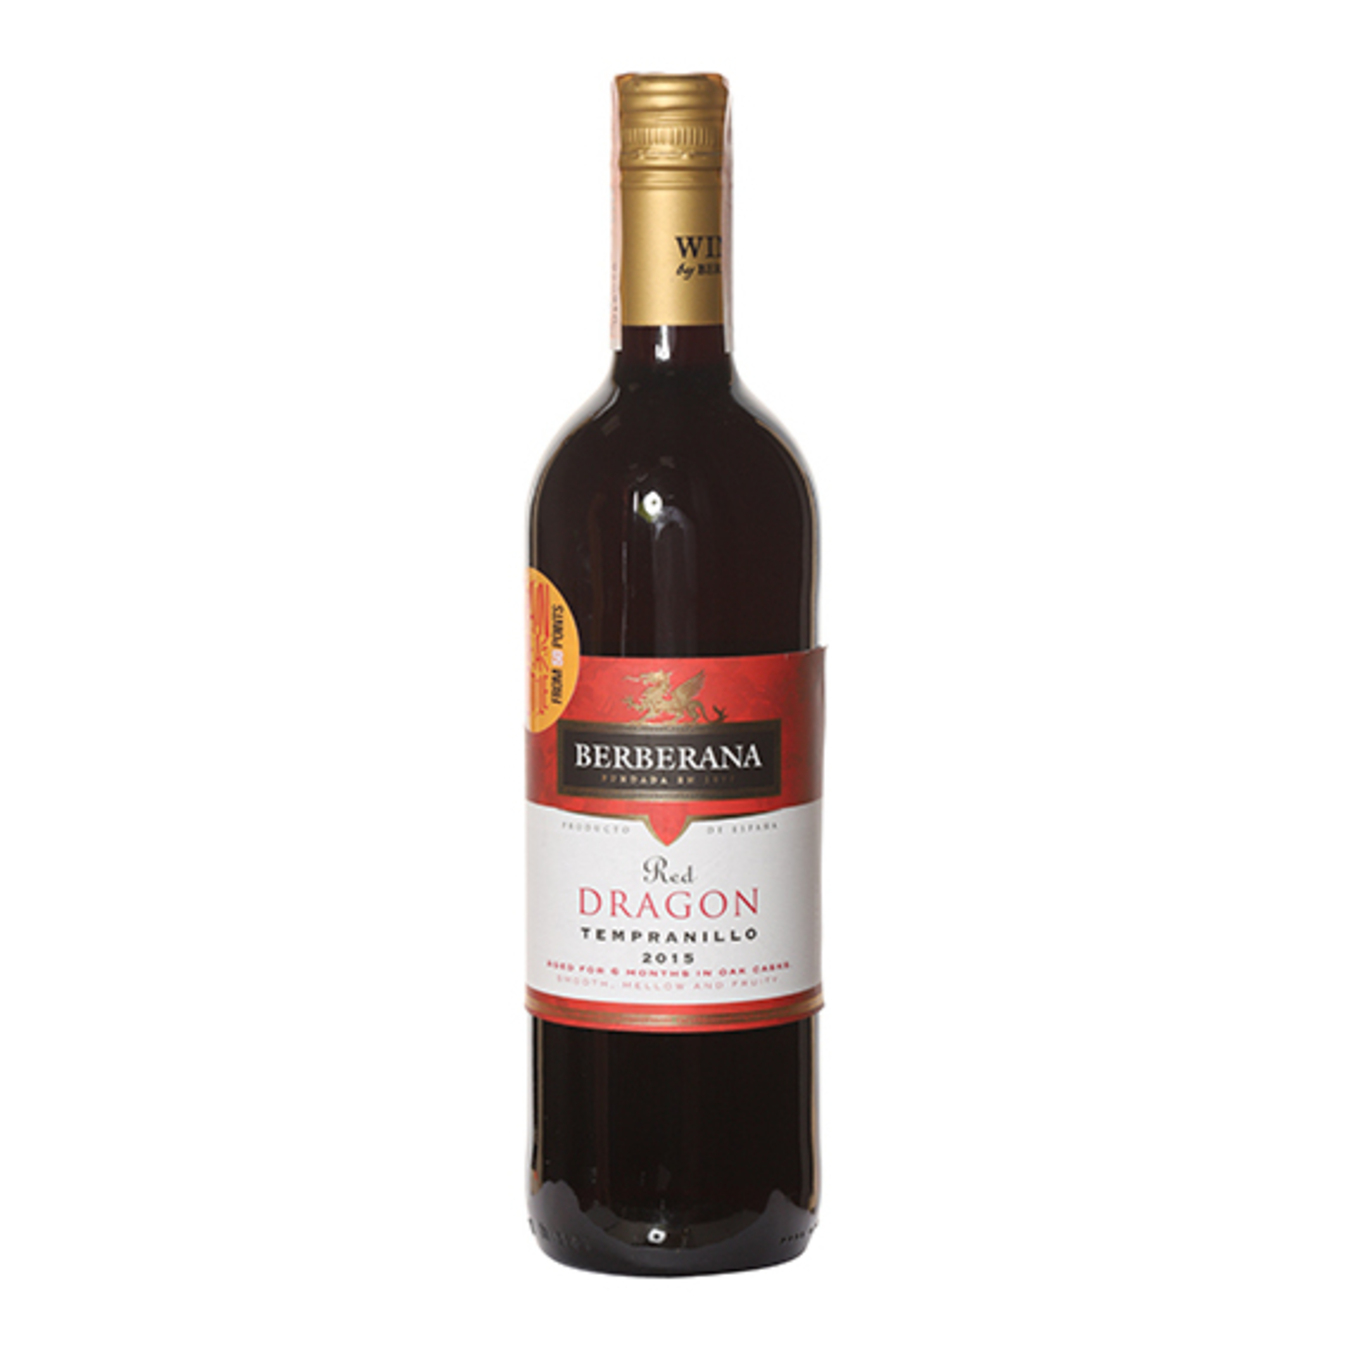 Вино Berberana Dragon Tempranillo червоне сухе 13% 0,75л